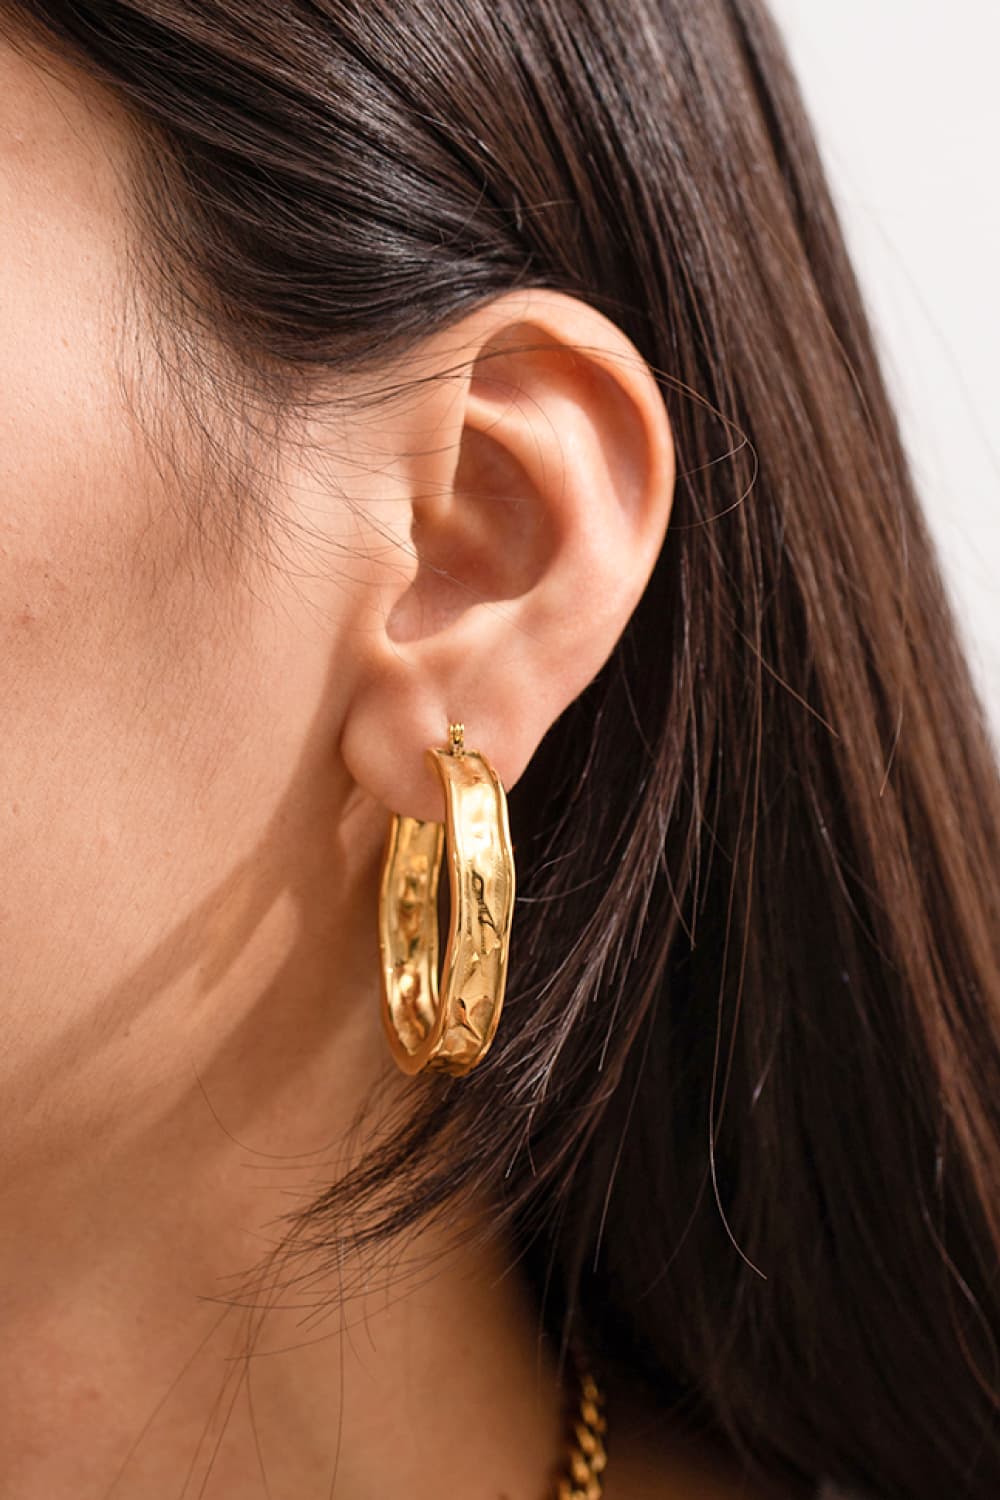 Hammered 18K Gold Hoop Earrings